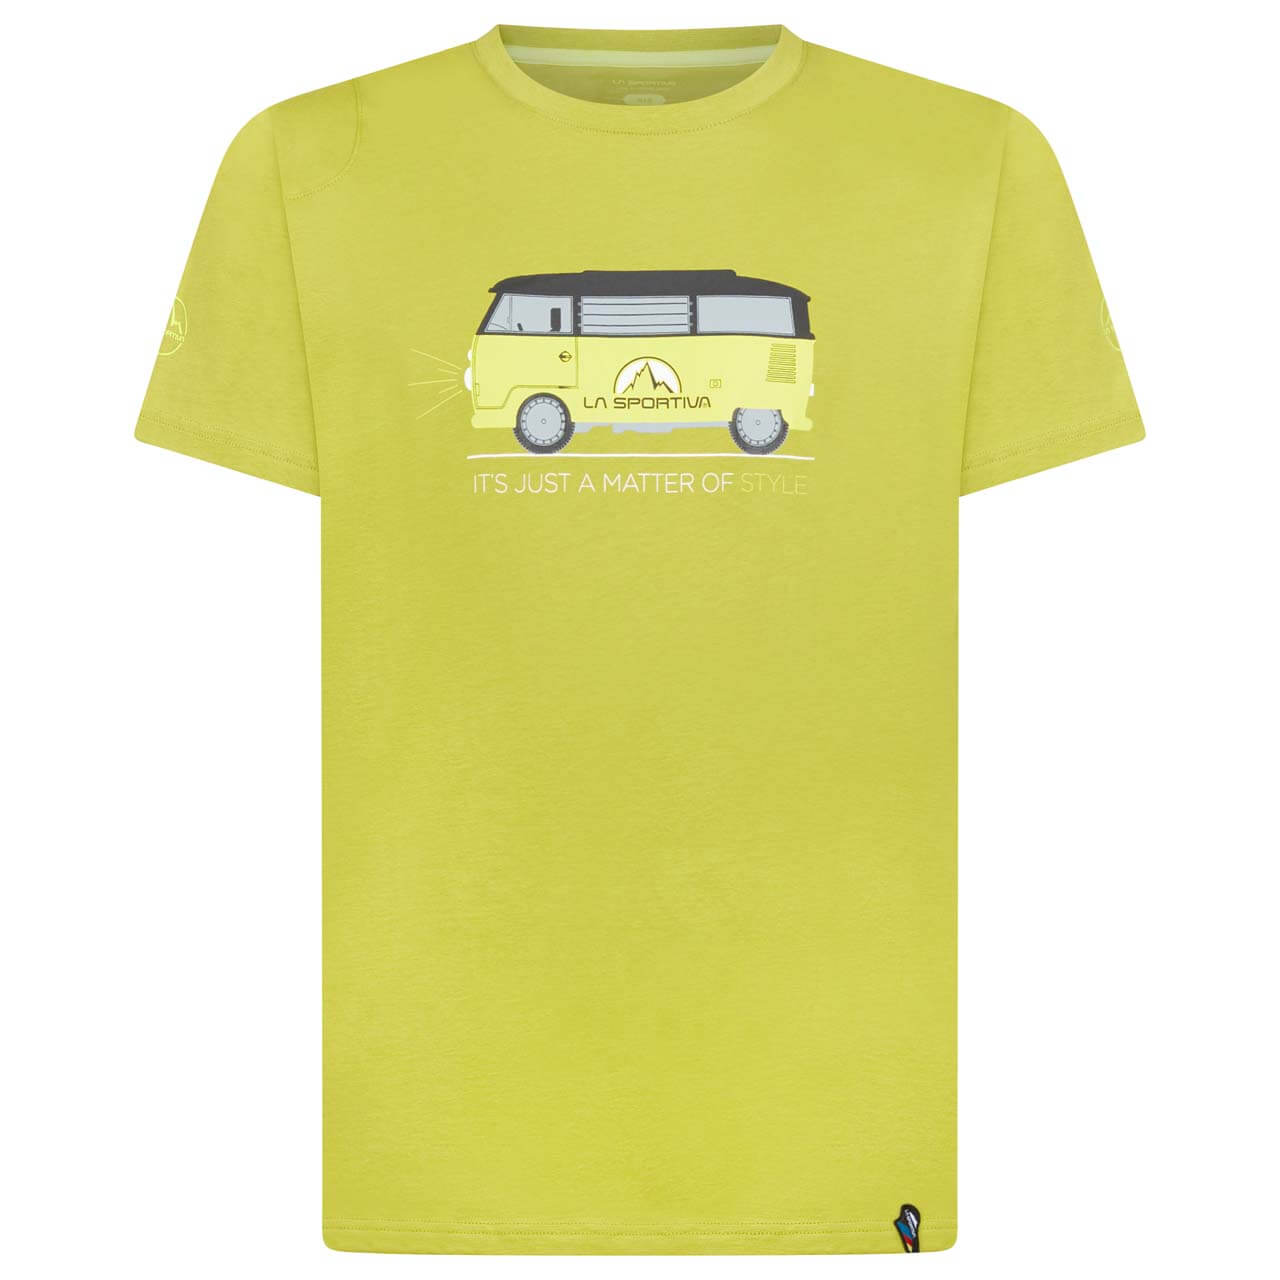 La Sportiva Van T-Shirt - Kiwi, XL